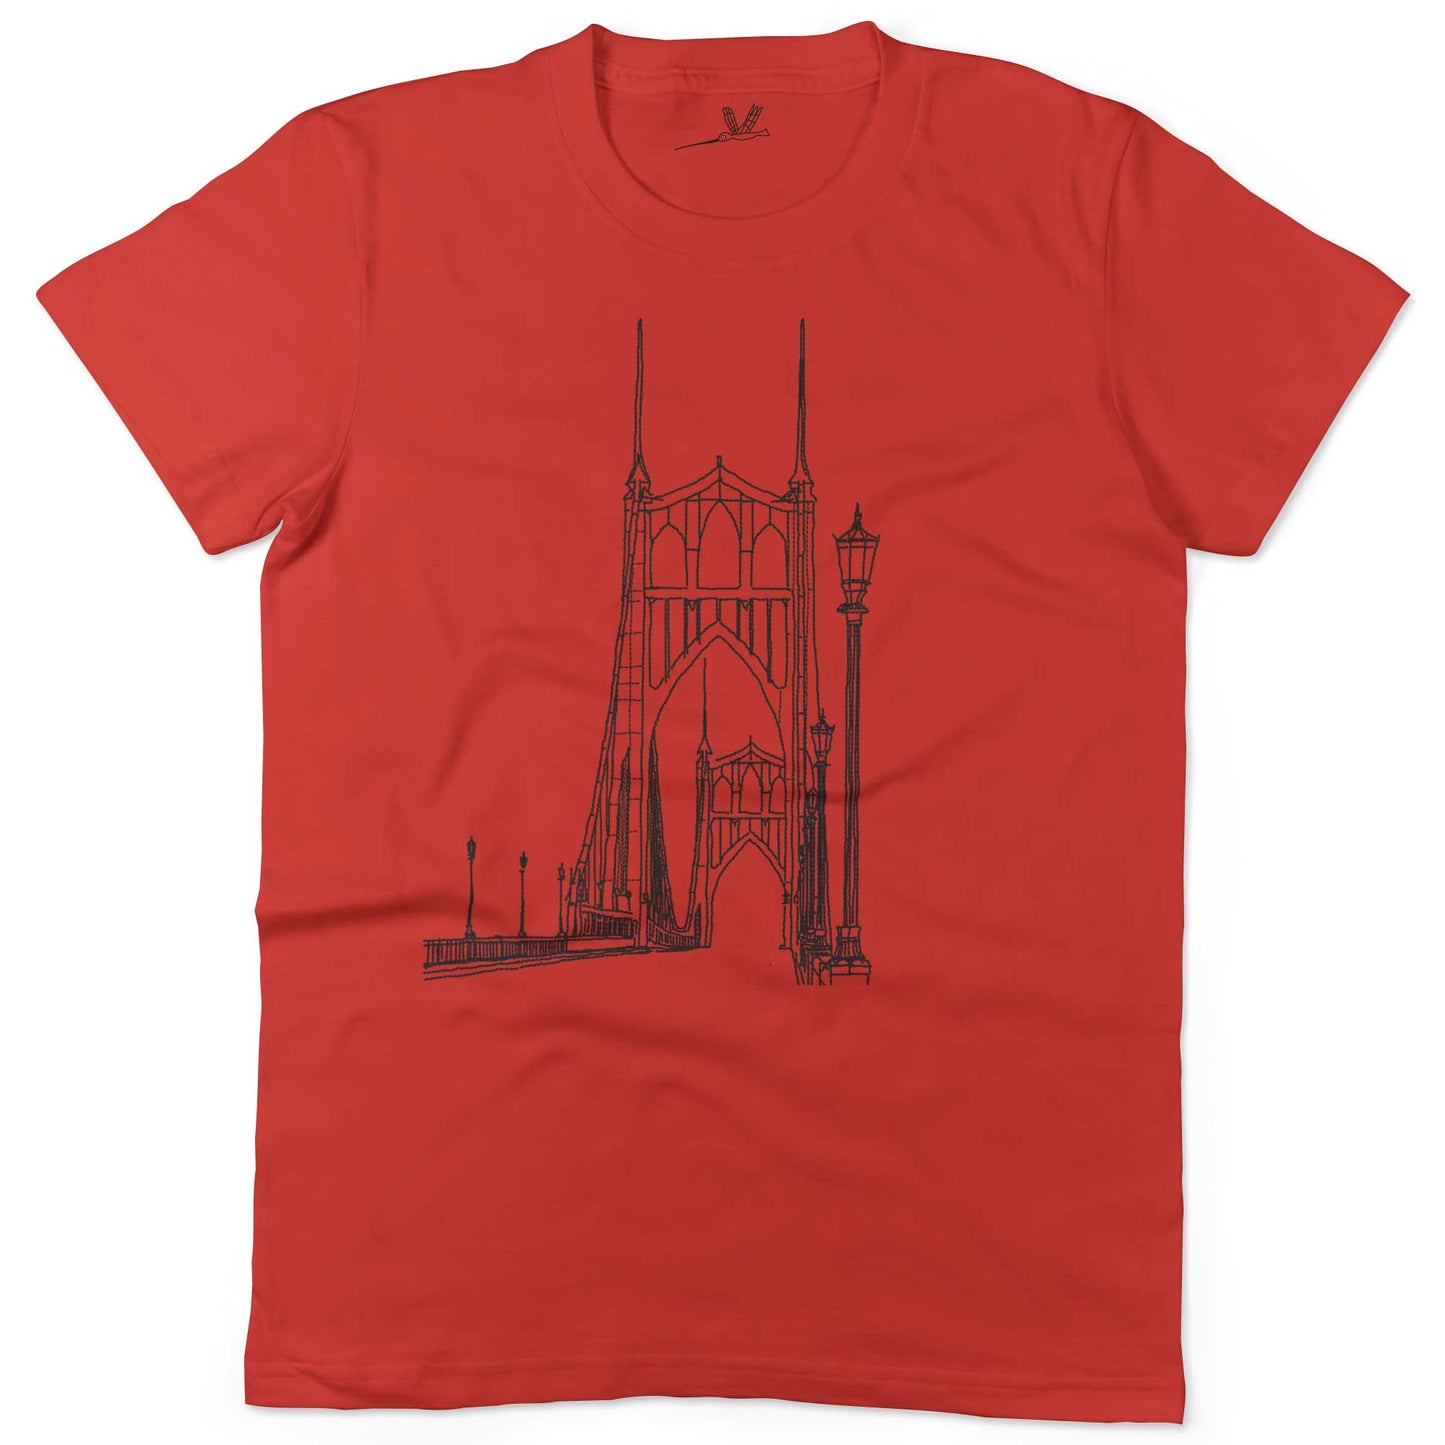 St Johns Bridge Unisex Or Women's Cotton T-shirt-Red-Woman